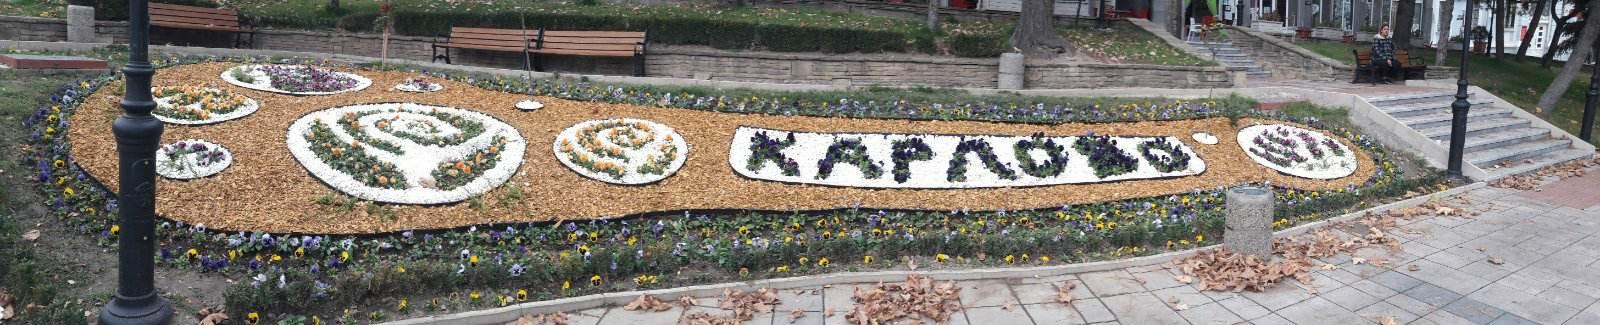 Националният трибагреник и символите на Община Карлово са оформени в две карловски градинки